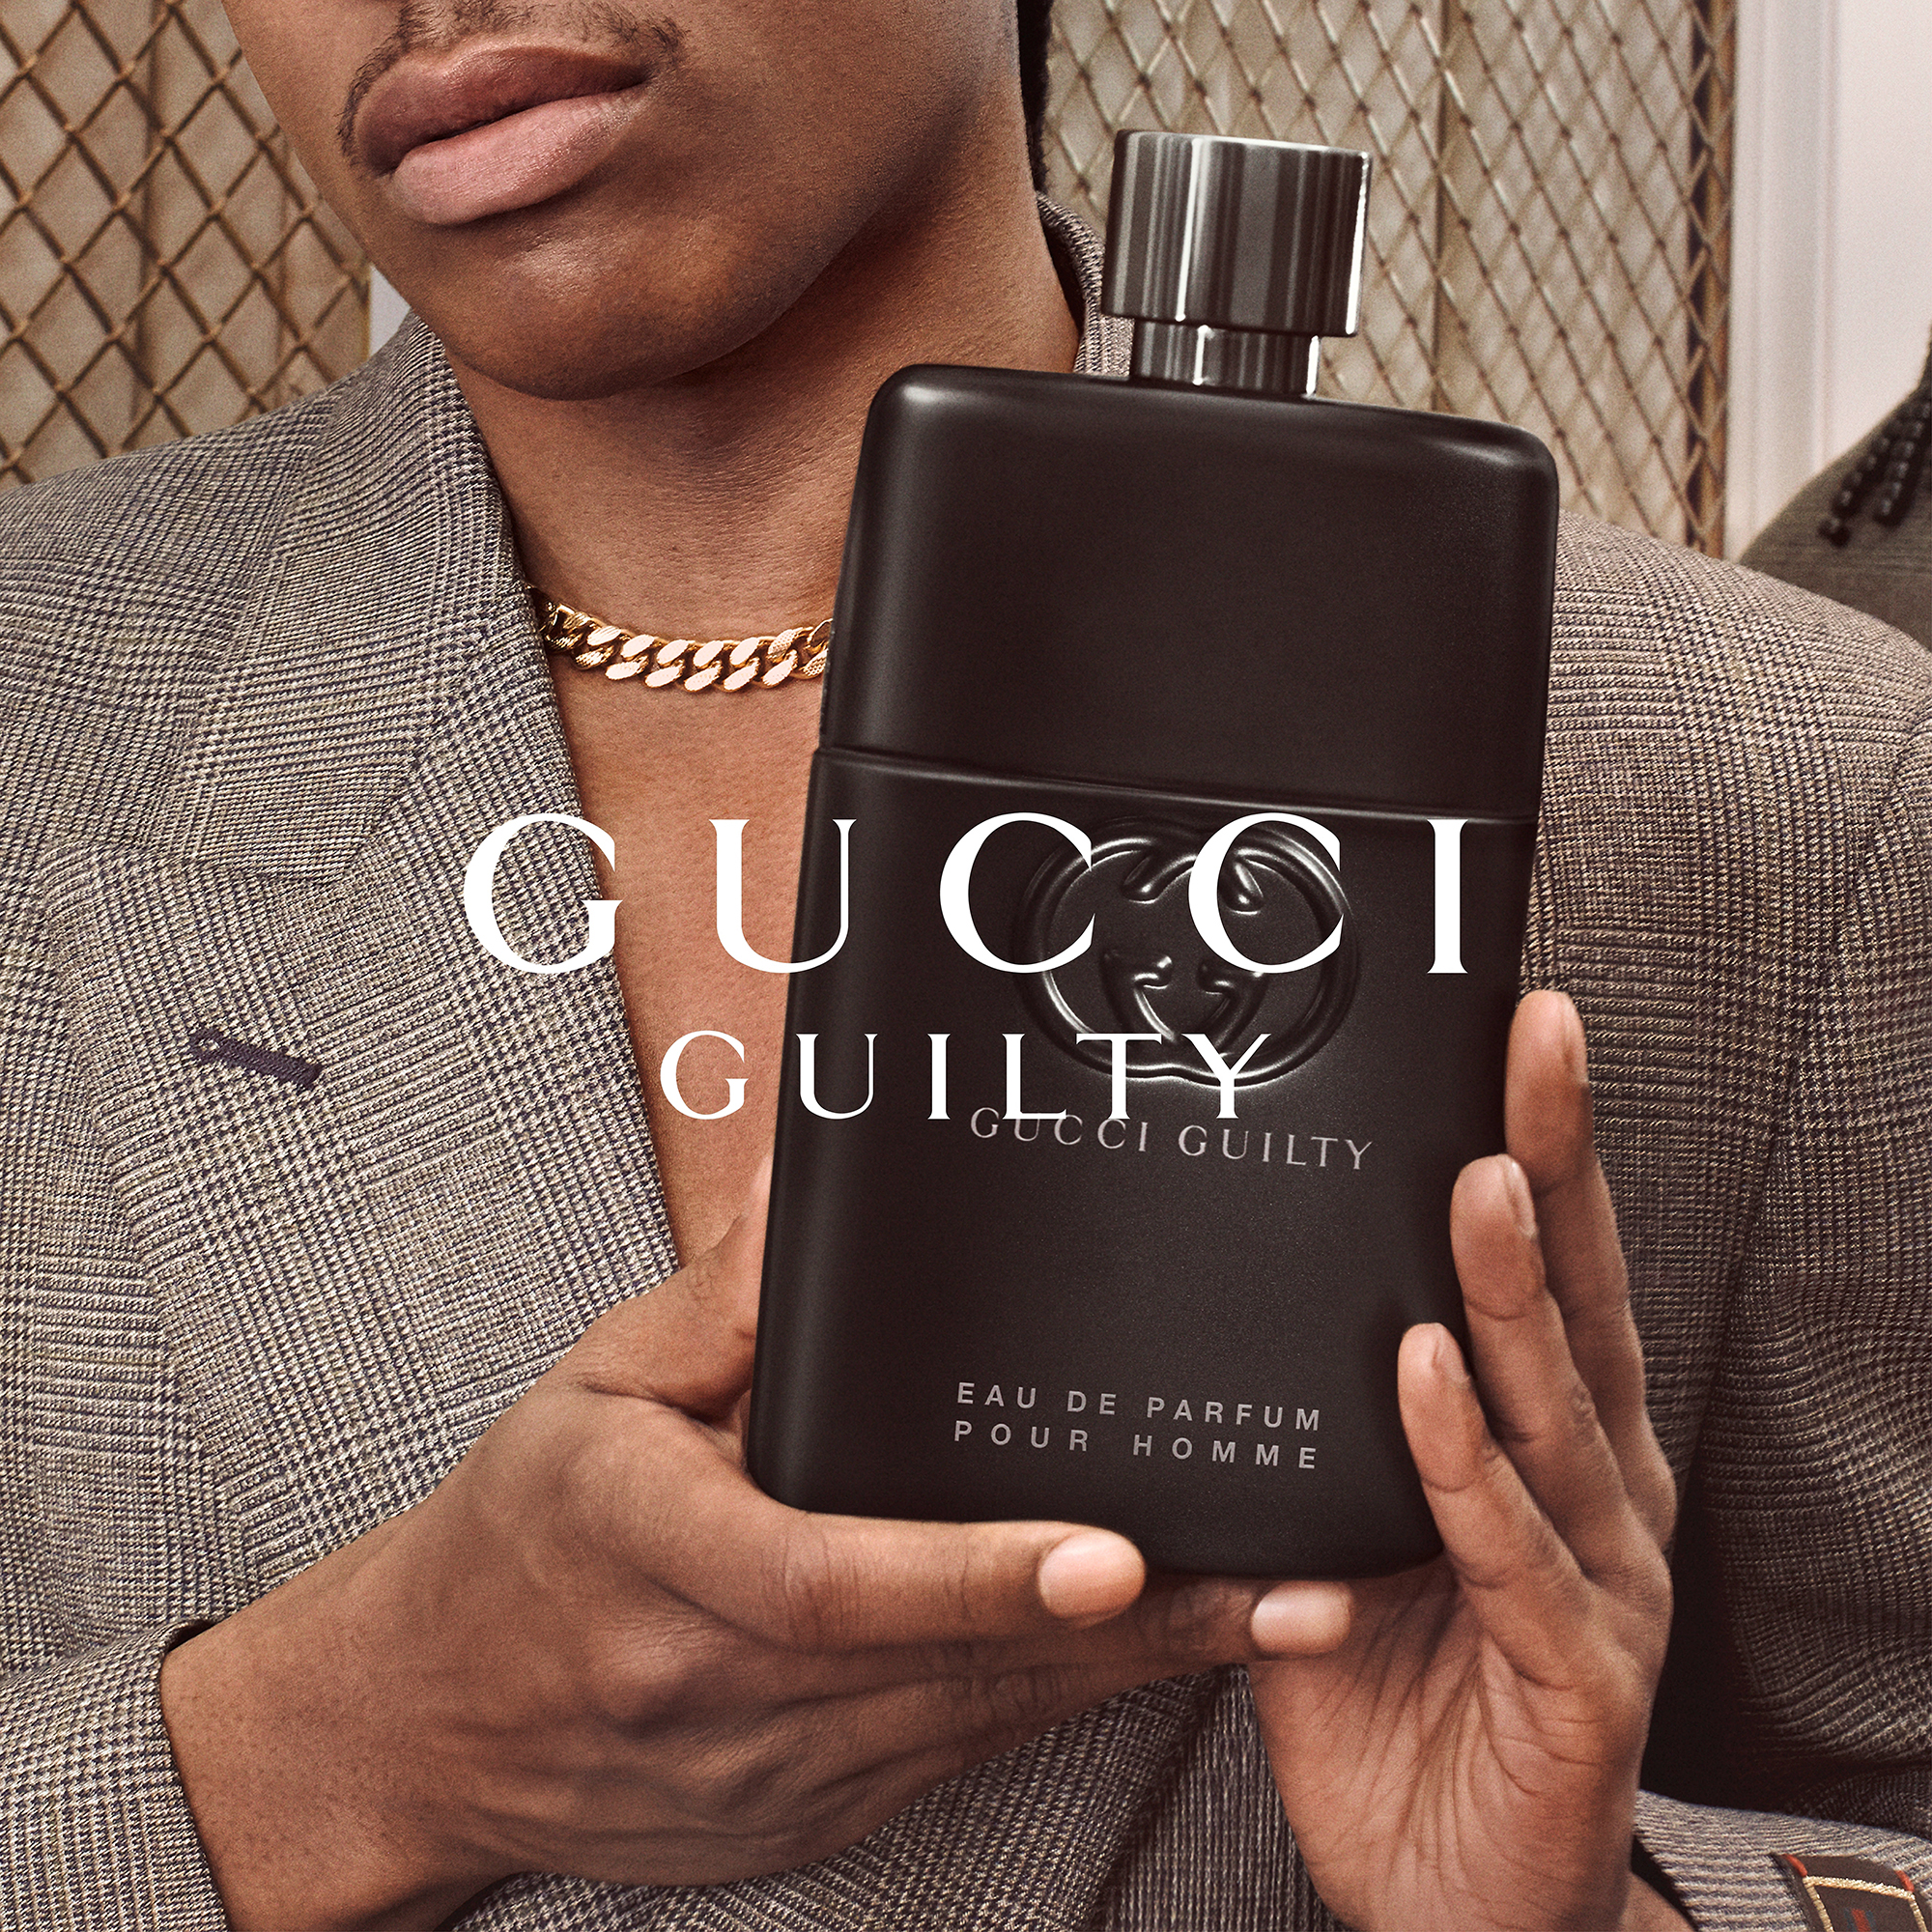 Gucci Guilty Parfum Pour Homme, 90ml in parfum